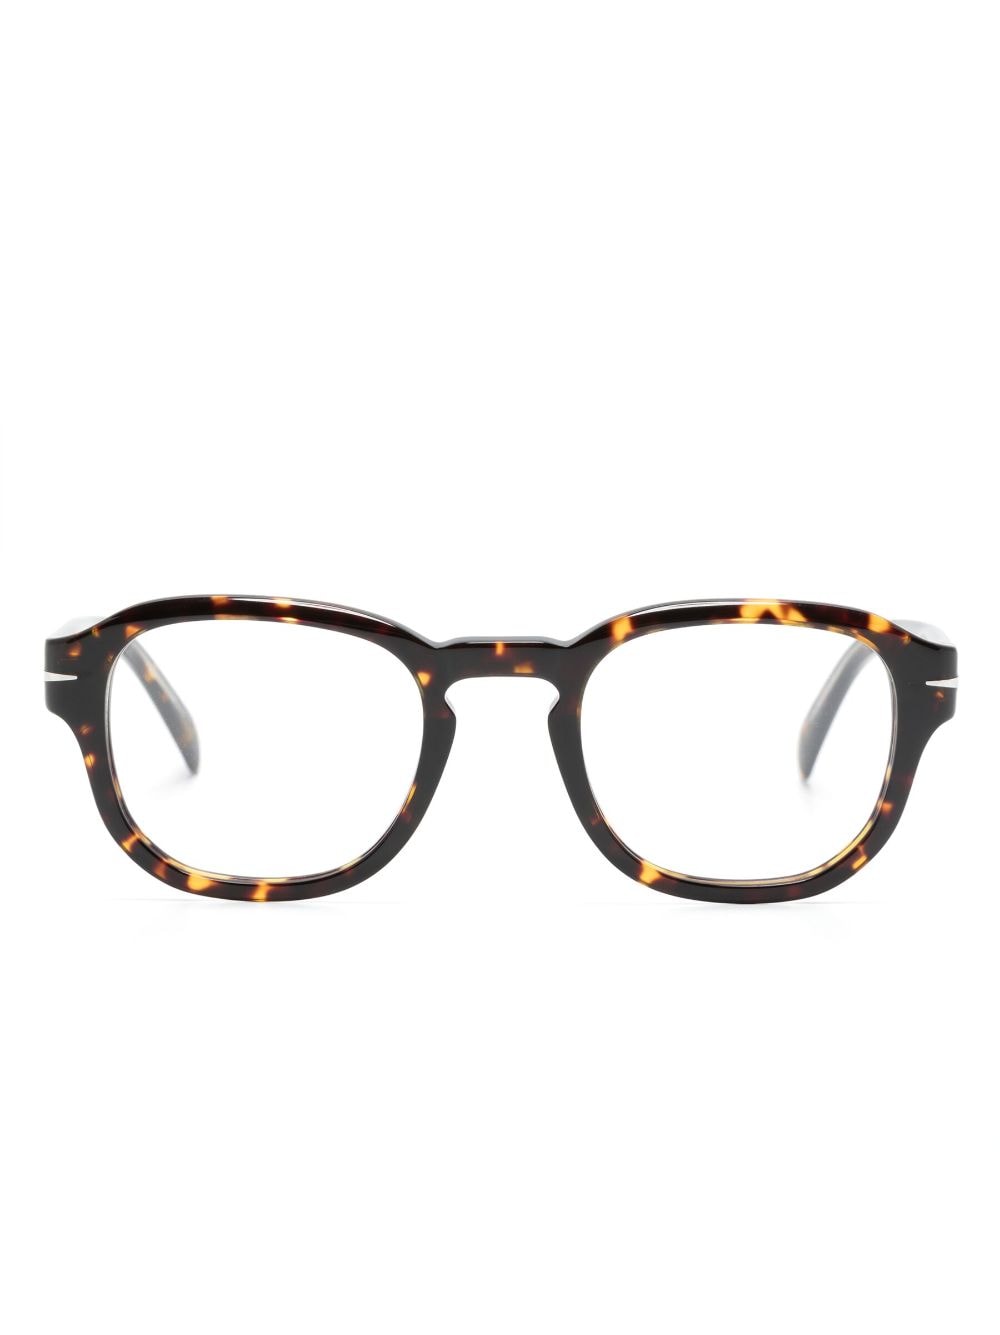 Image 1 of Eyewear by David Beckham очки в круглой оправе черепаховой расцветки